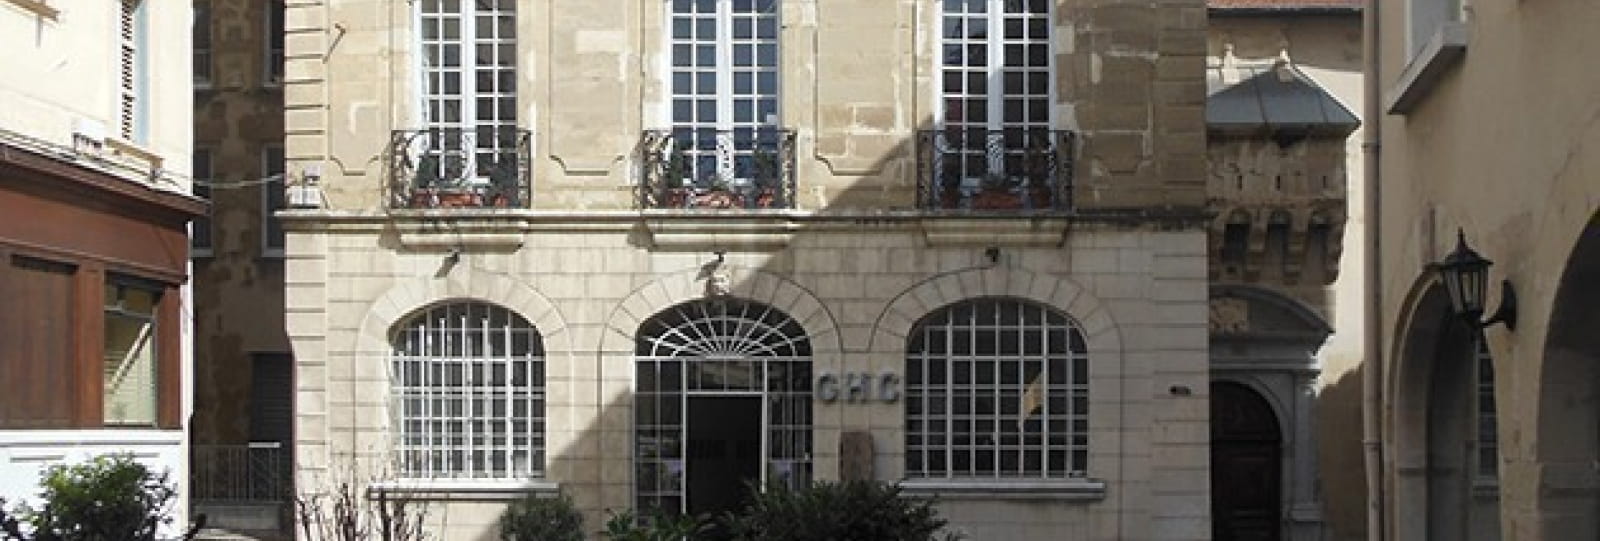 Hôtel de Clérieu